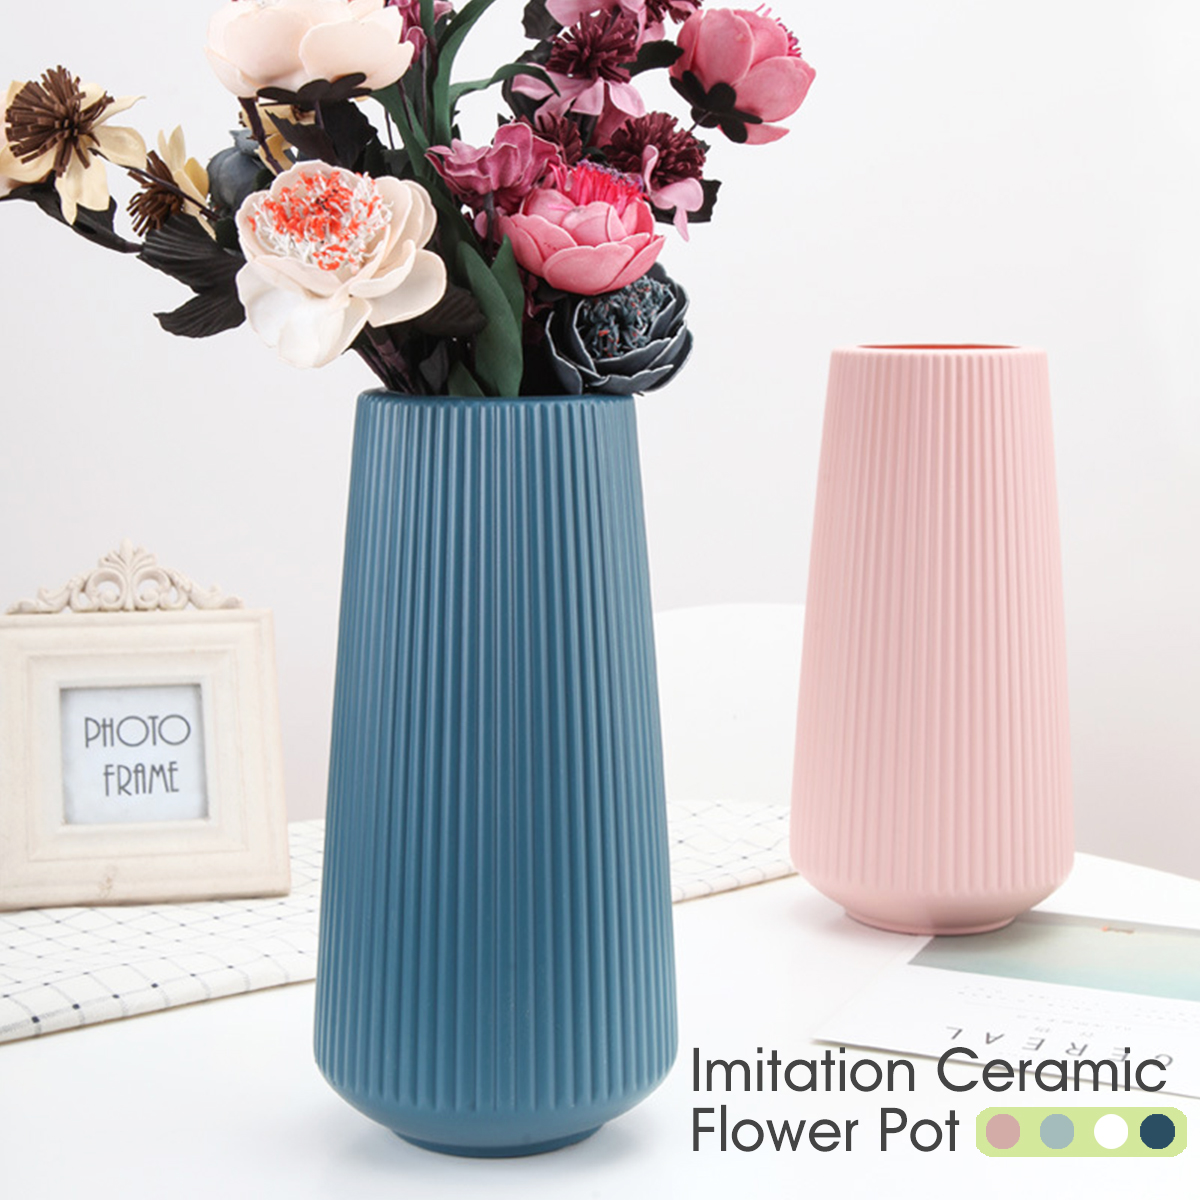 Geometric-Nordic-Origami-Imitation-Ceramic-Flower-Pot-Indoor-Dining-Room-Office-Decor-1628436-2